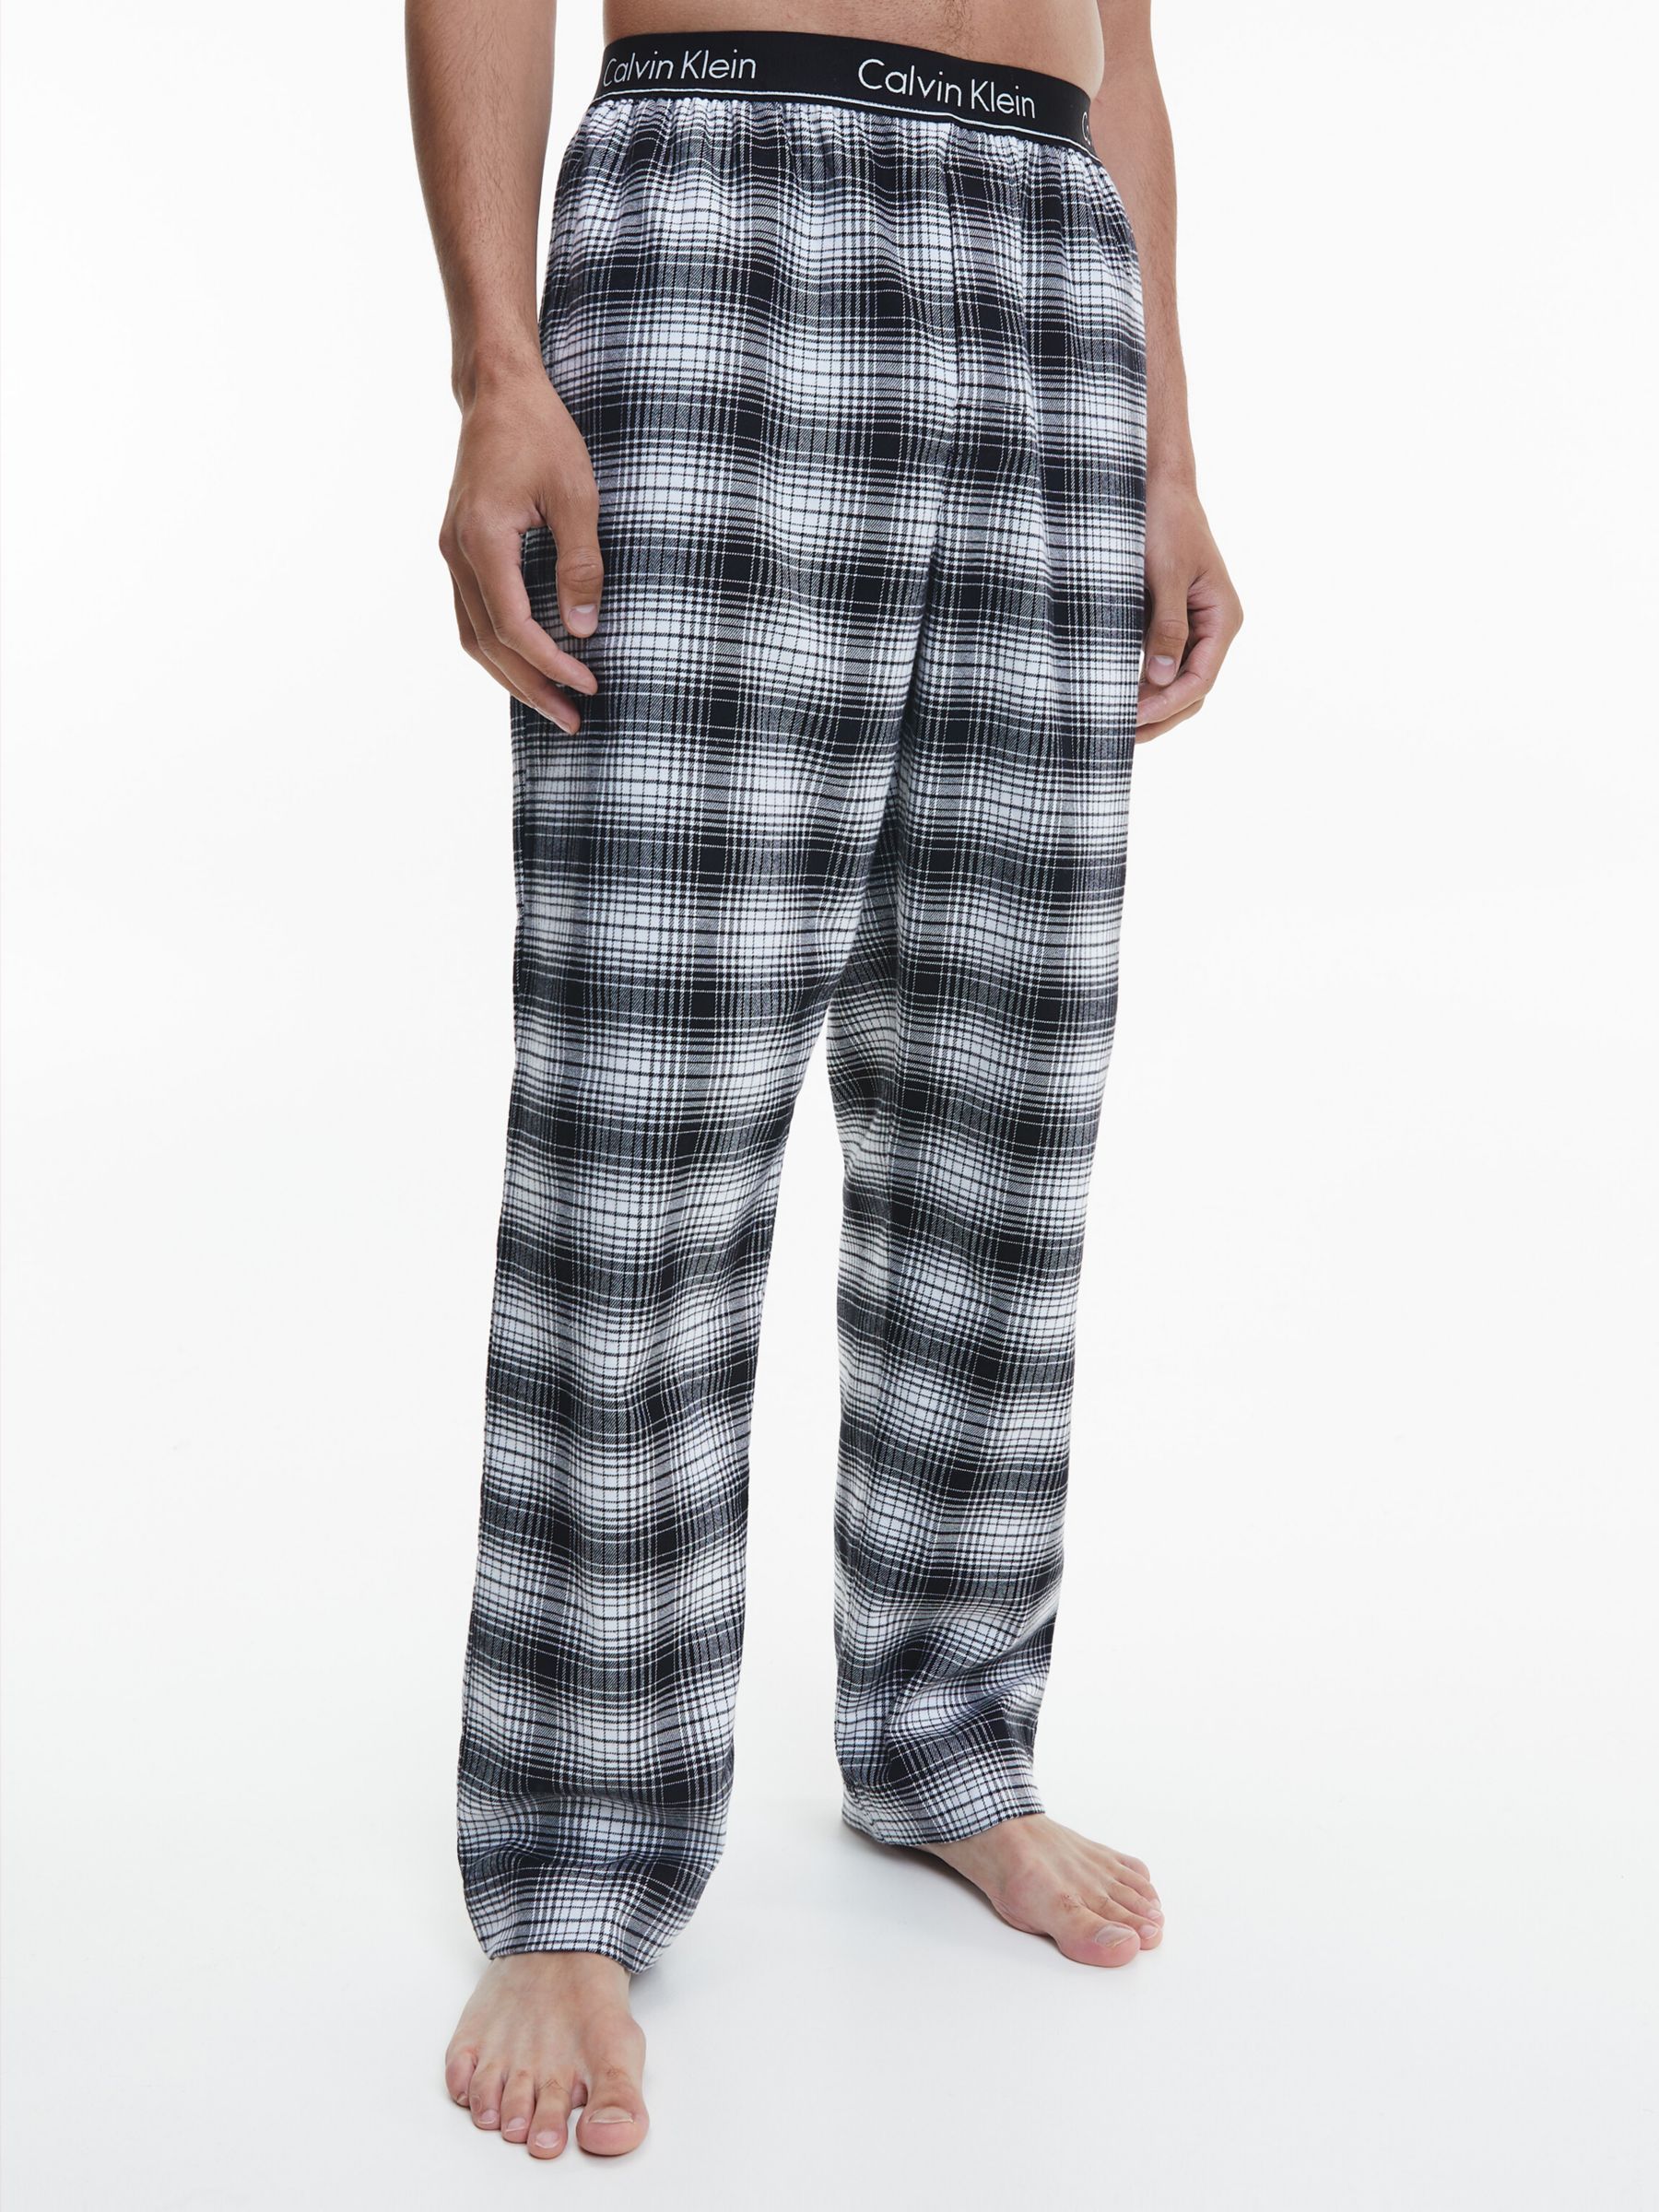 Calvin Klein Check Pyjama Bottoms, Black/White